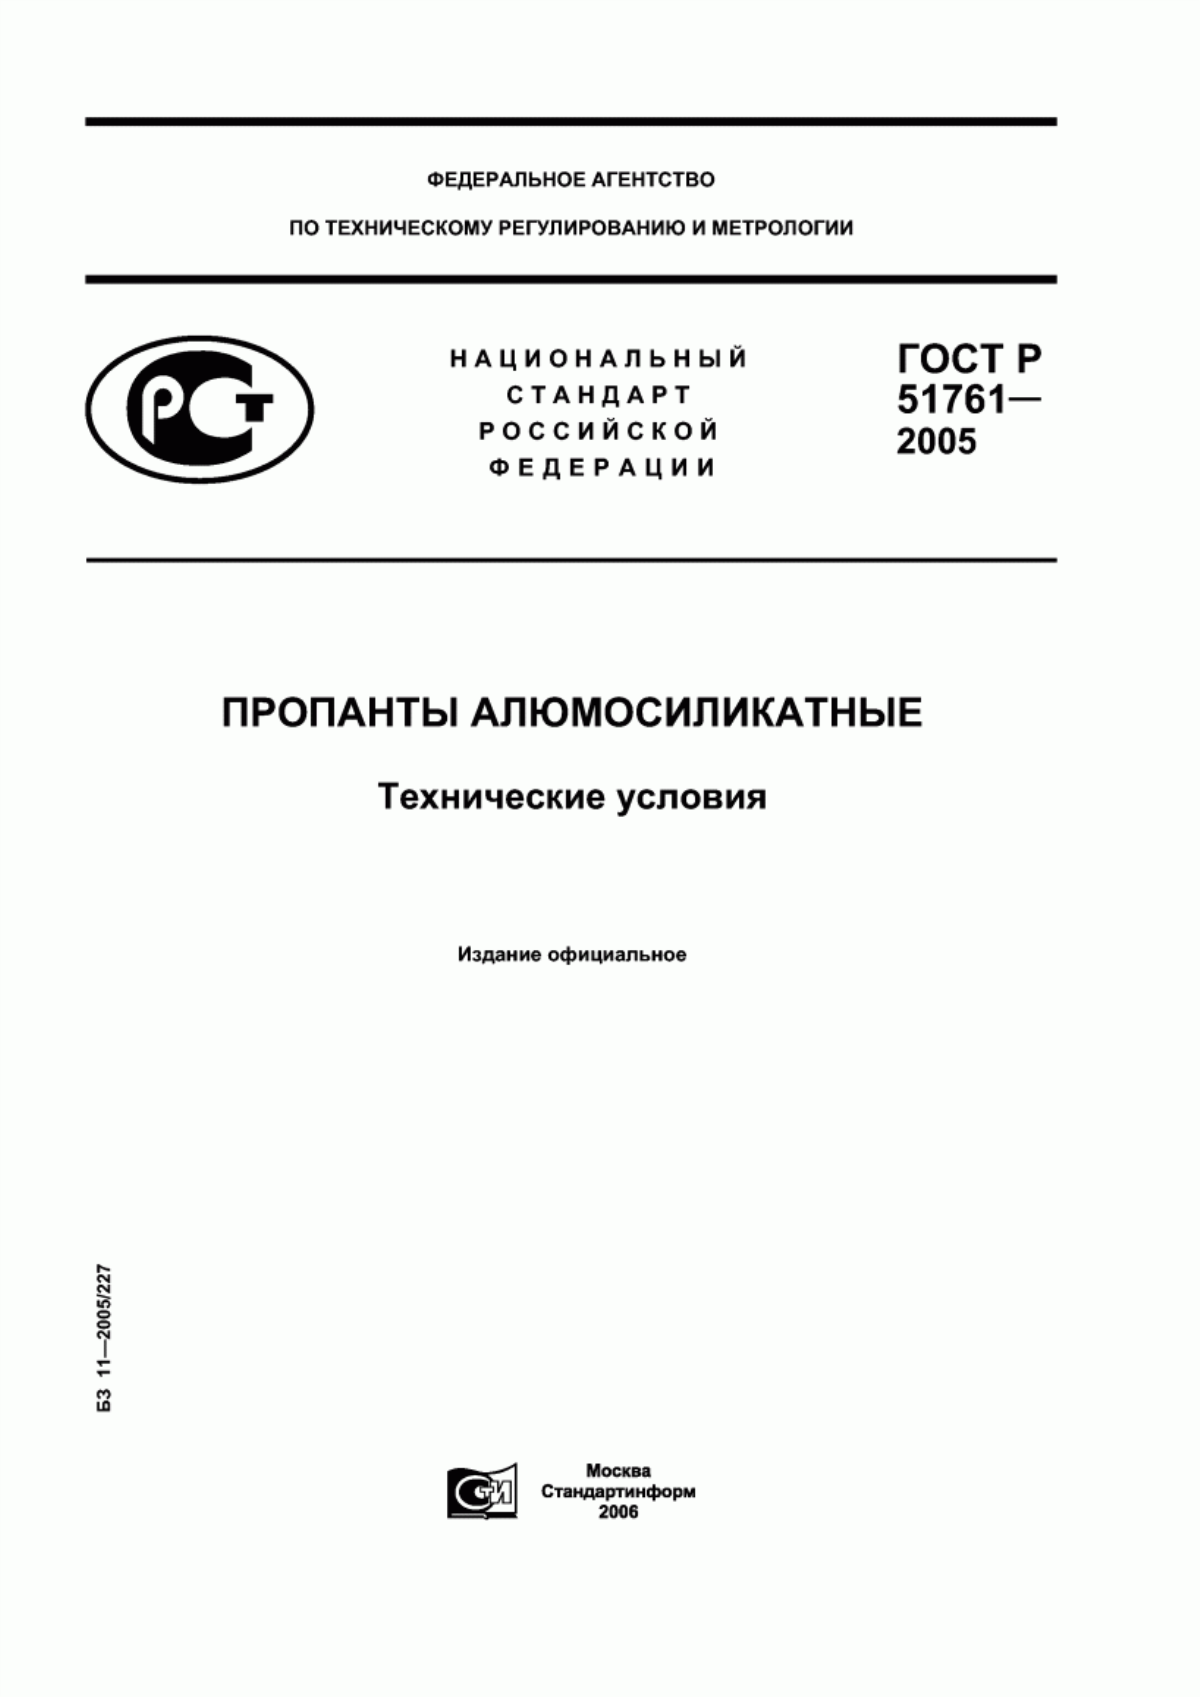 ГОСТ Р 51761-2005 Пропанты алюмосиликатные. Технические условия